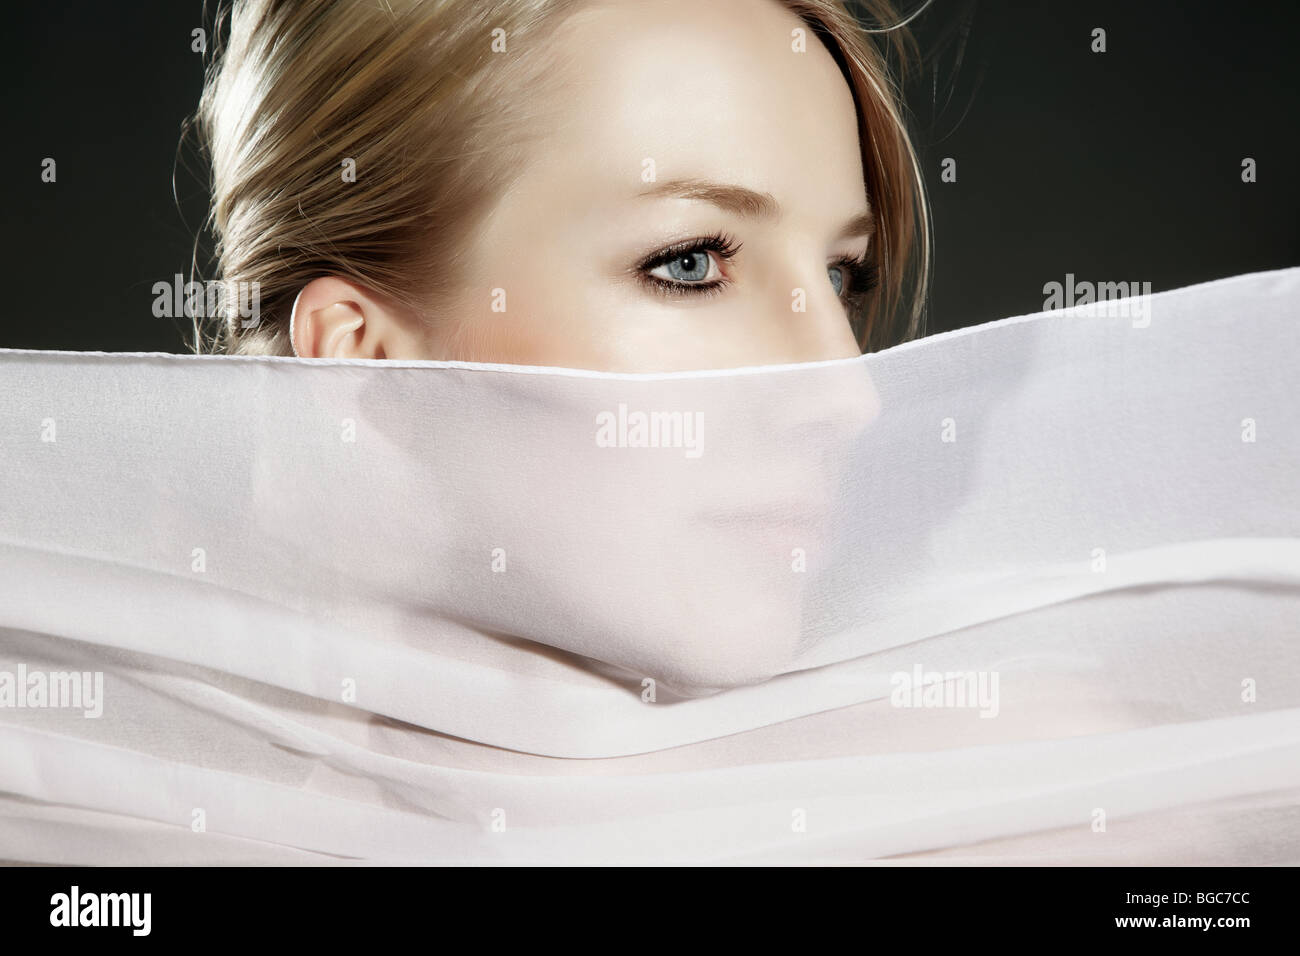 Retrato de una mujer joven con una tela de seda blanca que fluye delante de su rostro Foto de stock